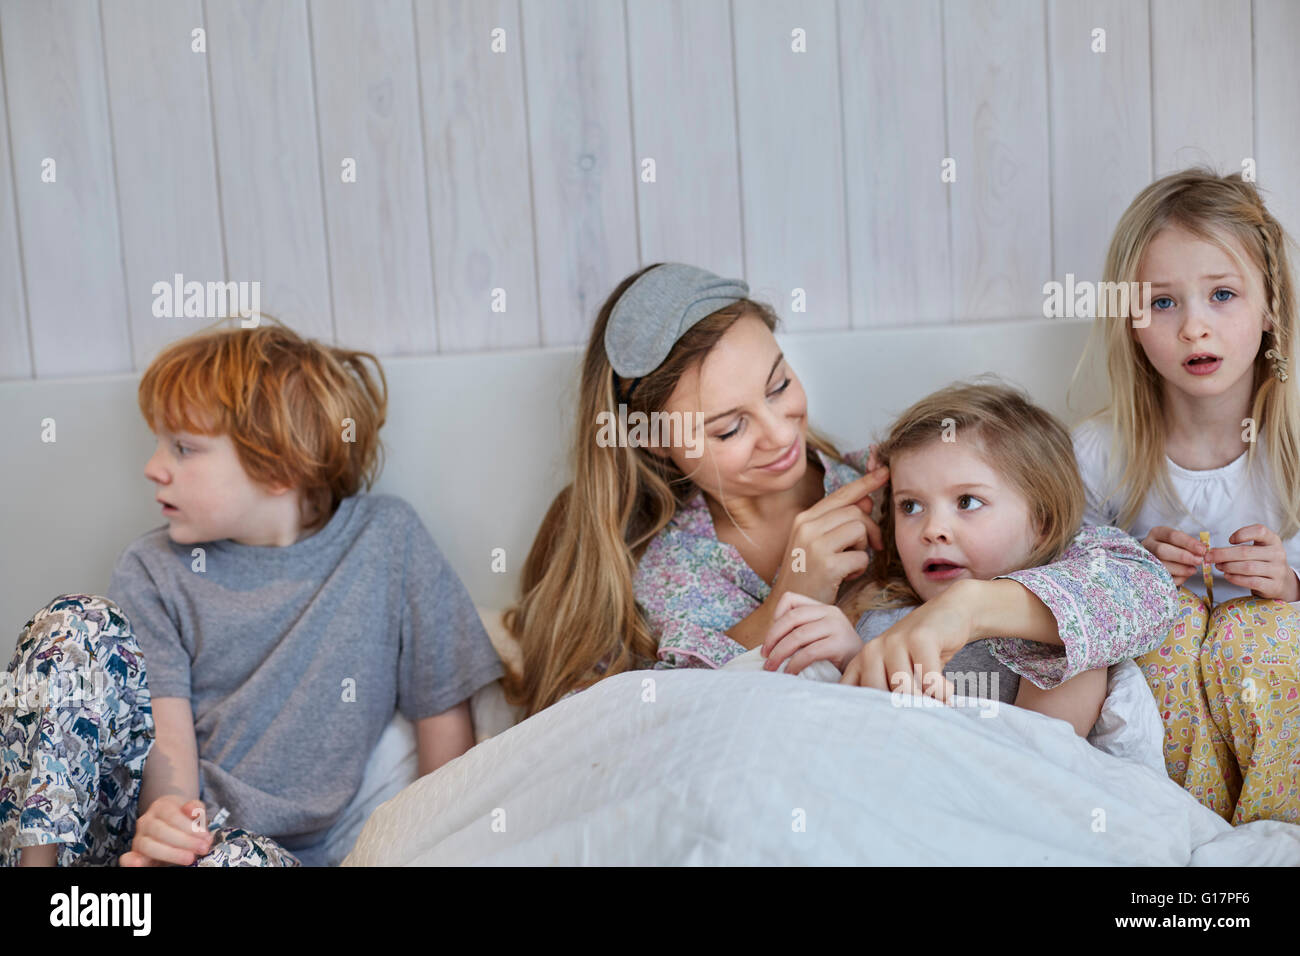 Madre e hijos juntos en la cama Foto de stock